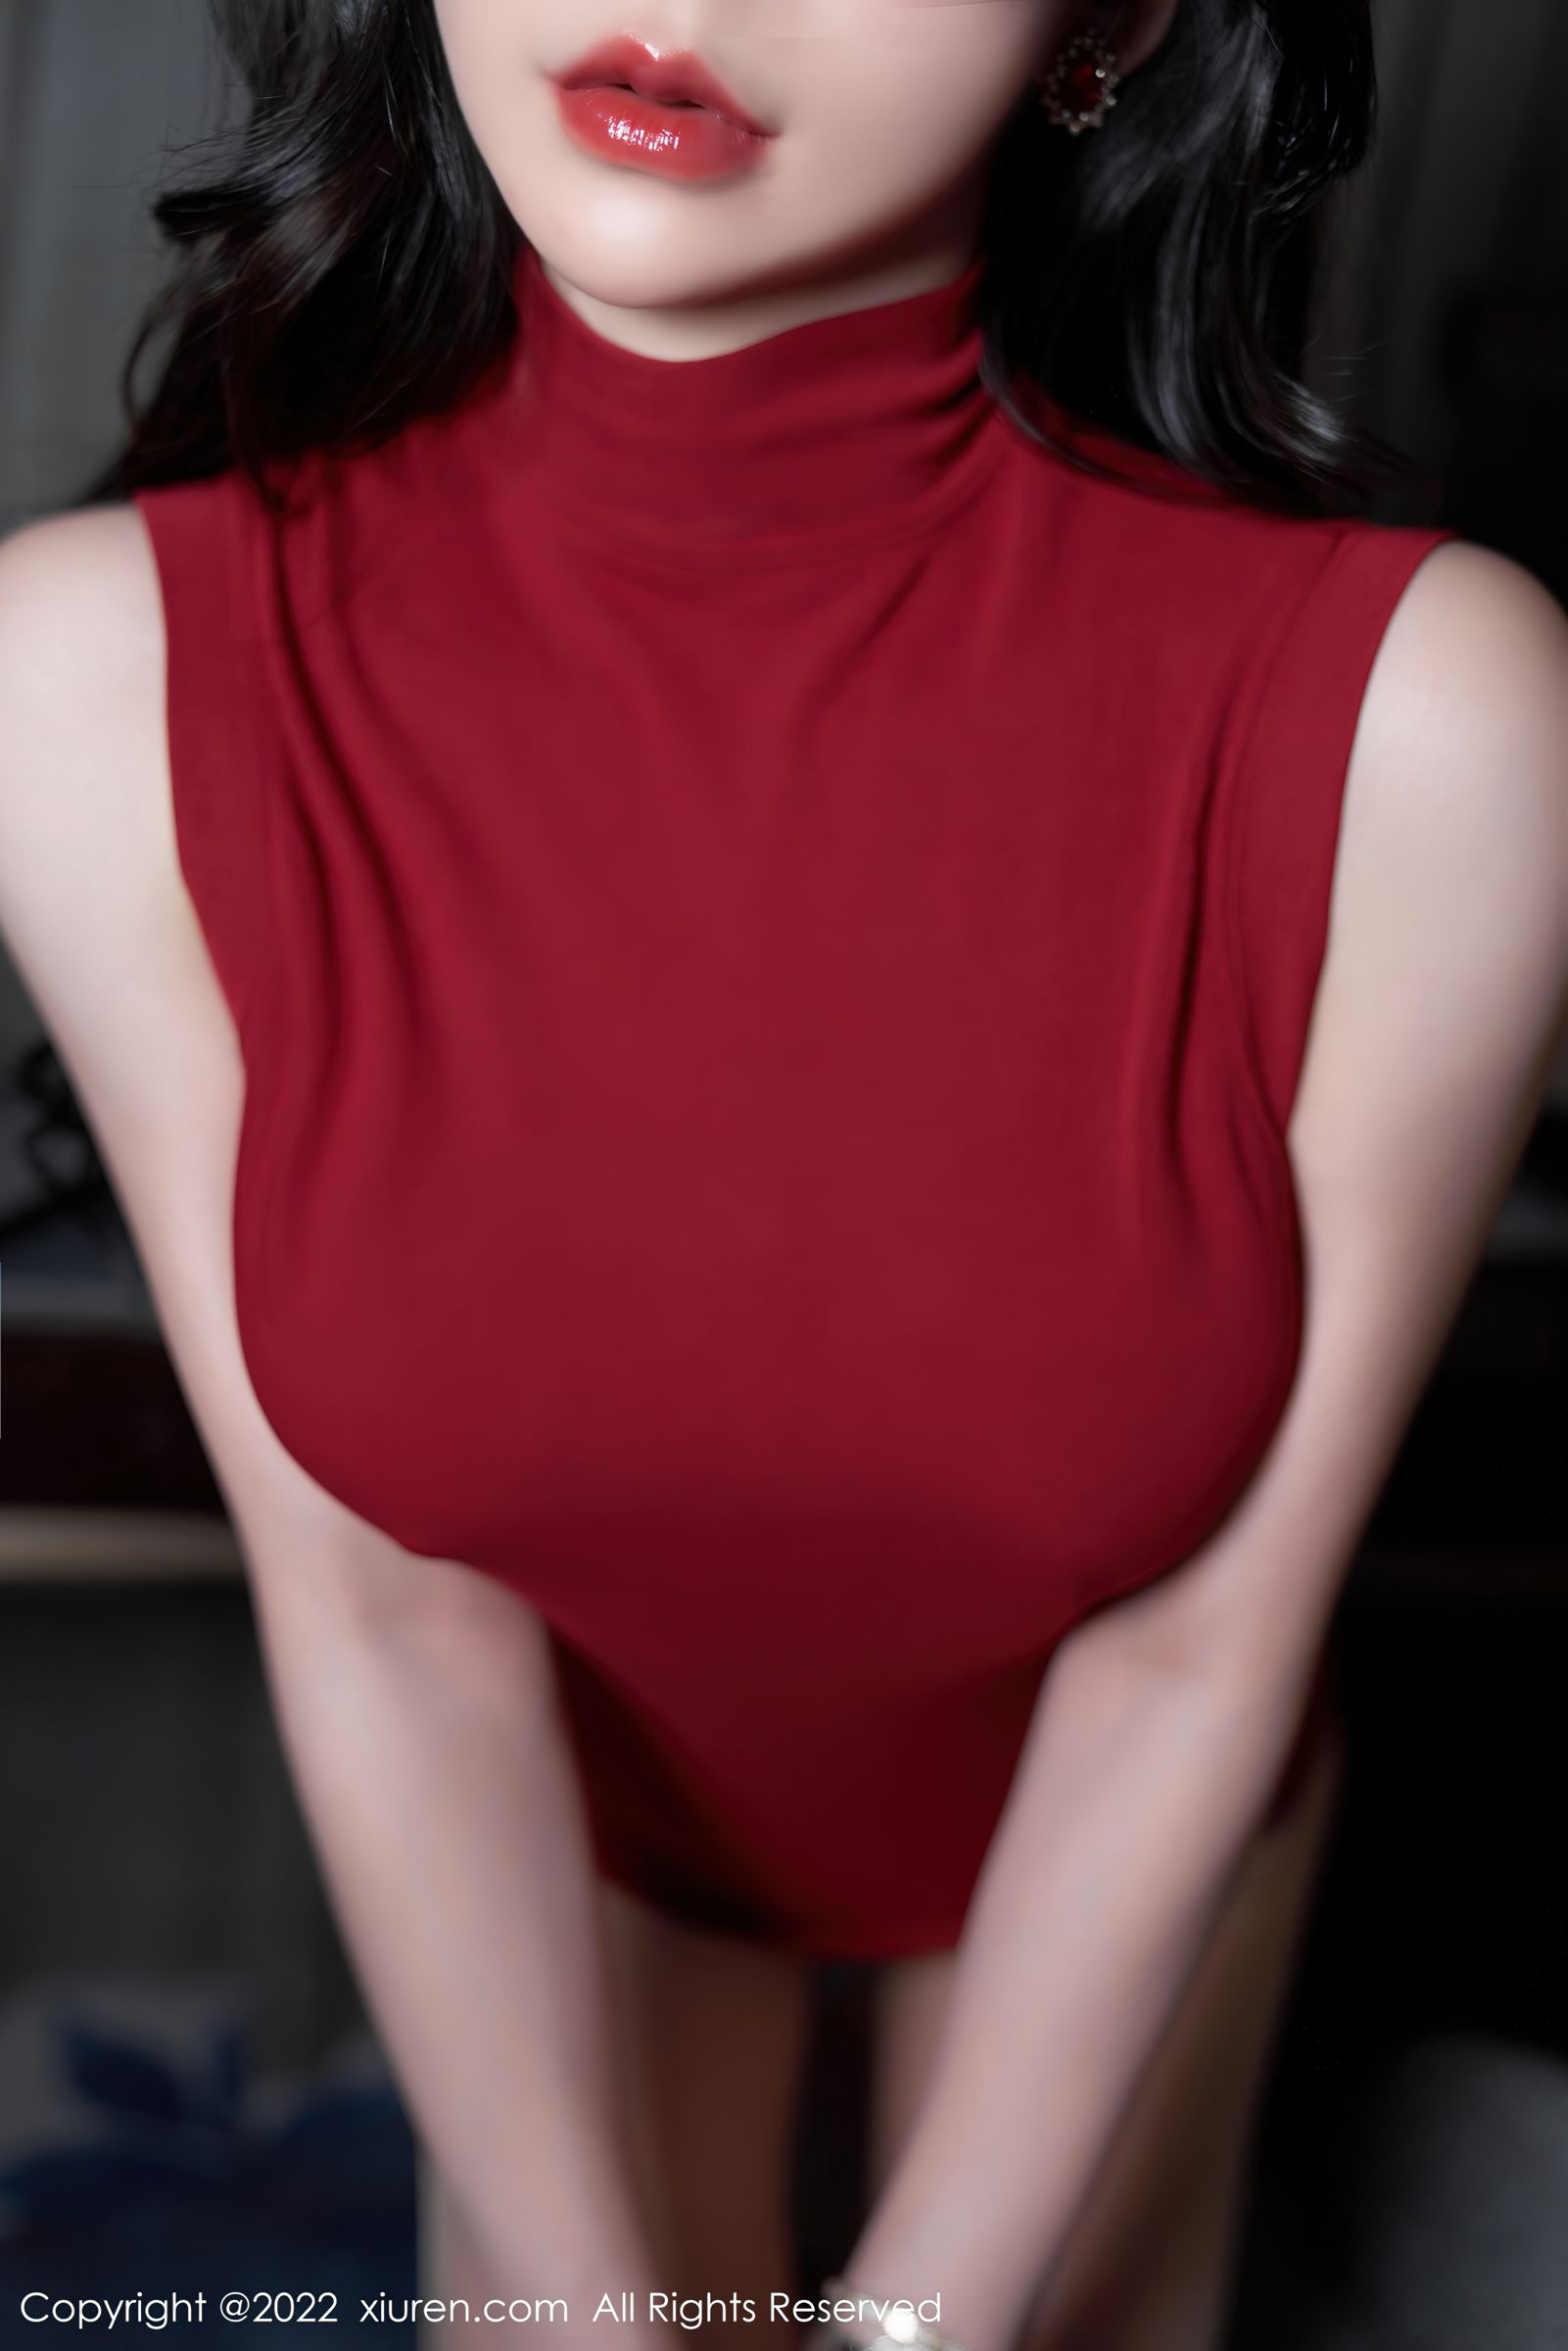 [XiuRen秀人网]-No.4728-周于希Sally-女秘书服饰白色长裙红色上衣搭配原色丝袜白色高跟鞋-套图之家